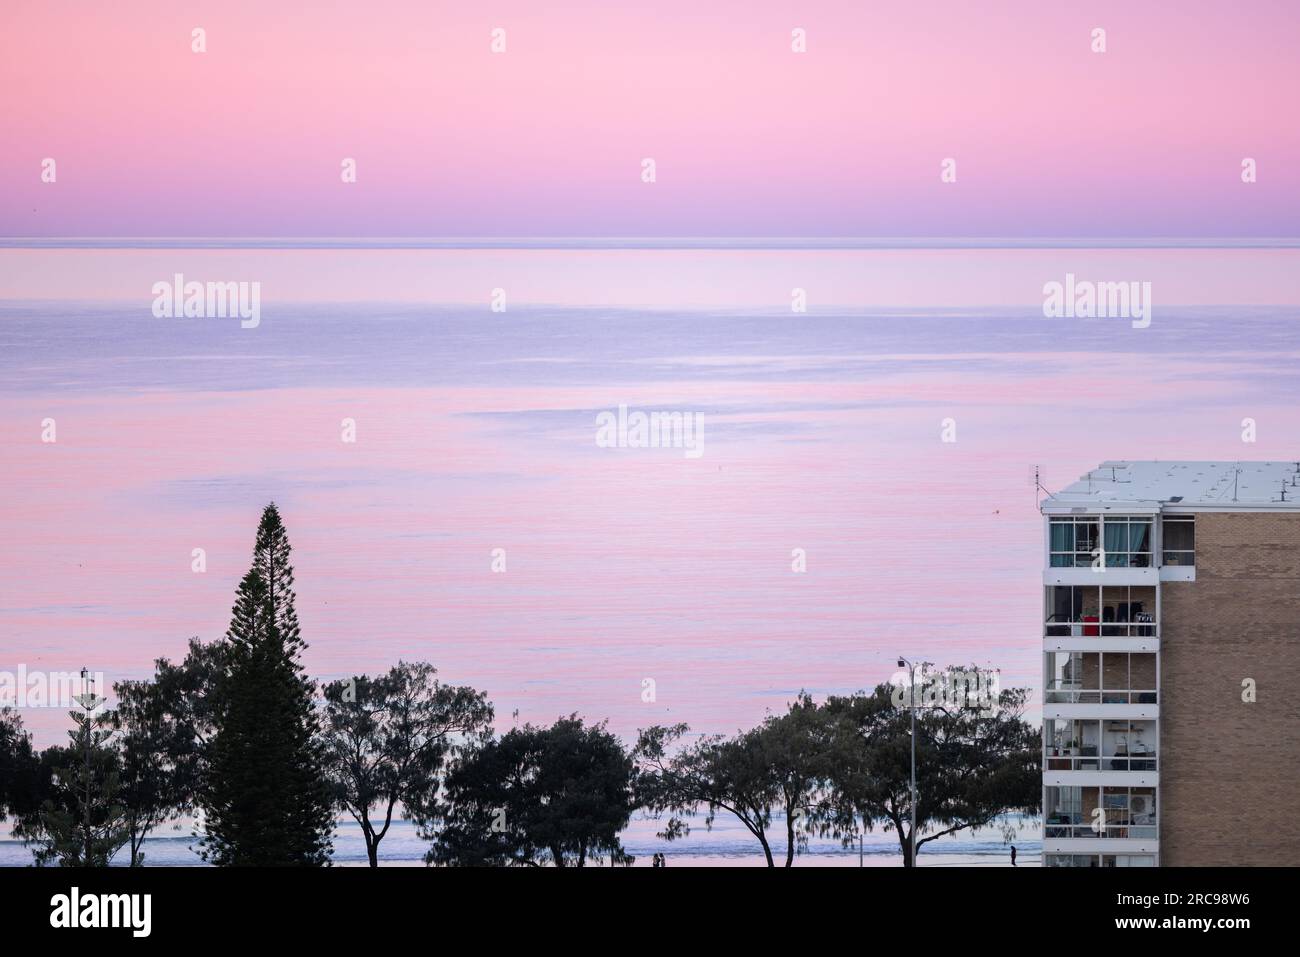 Appartement de grande hauteur en bord de mer près de la plage avec beau ciel rose au coucher du soleil Banque D'Images